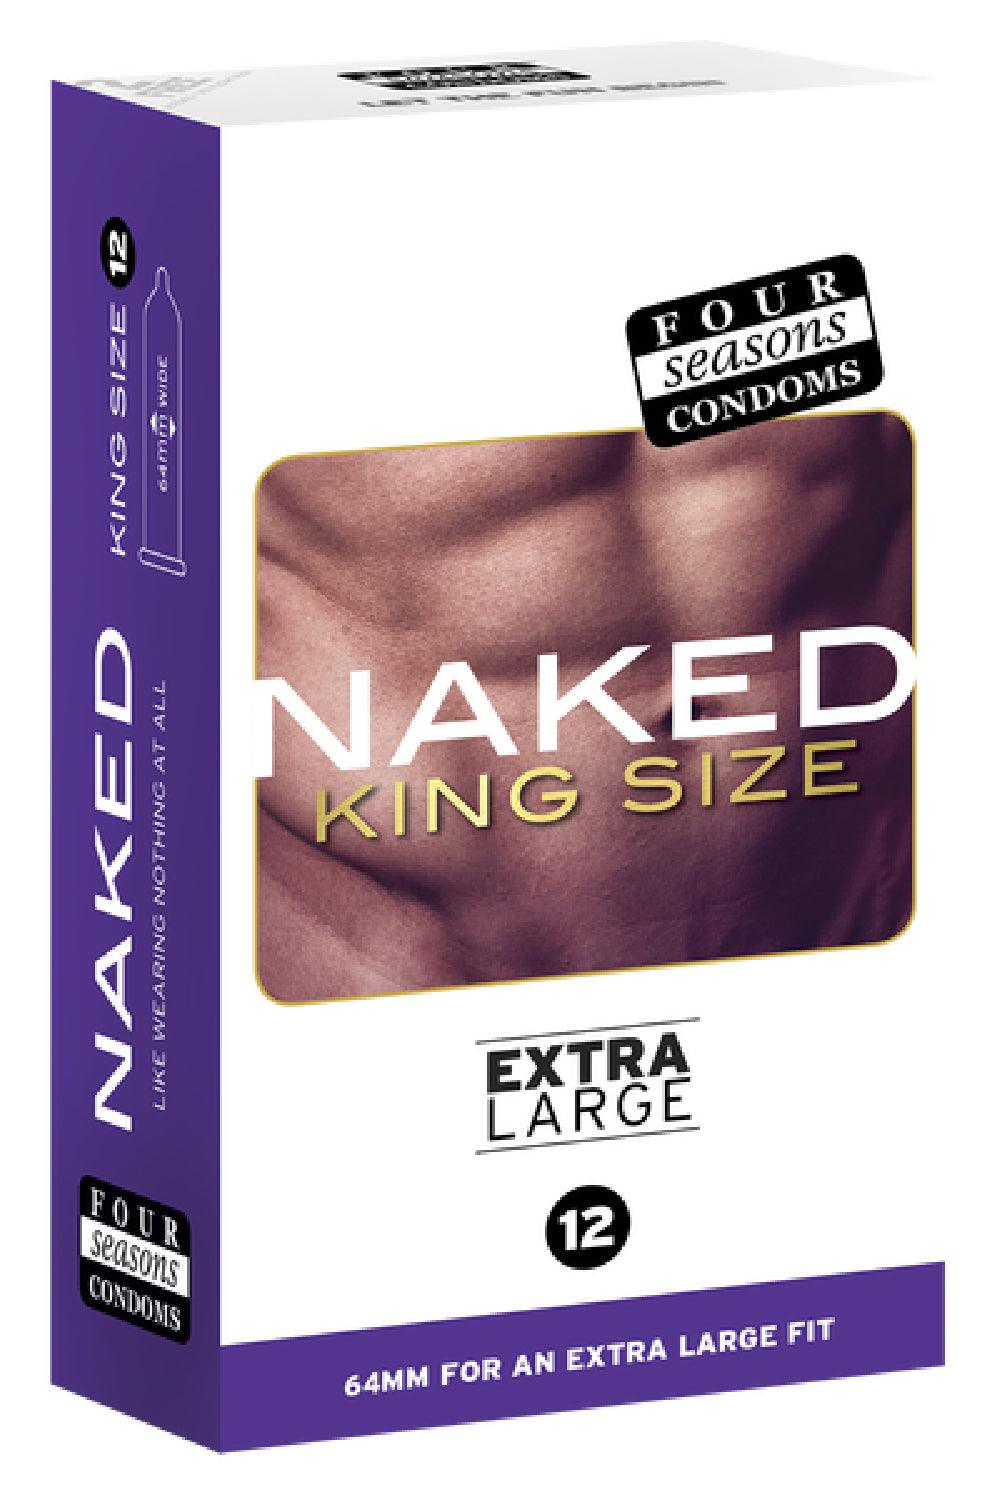 Naked King Size 12's - Take A Peek